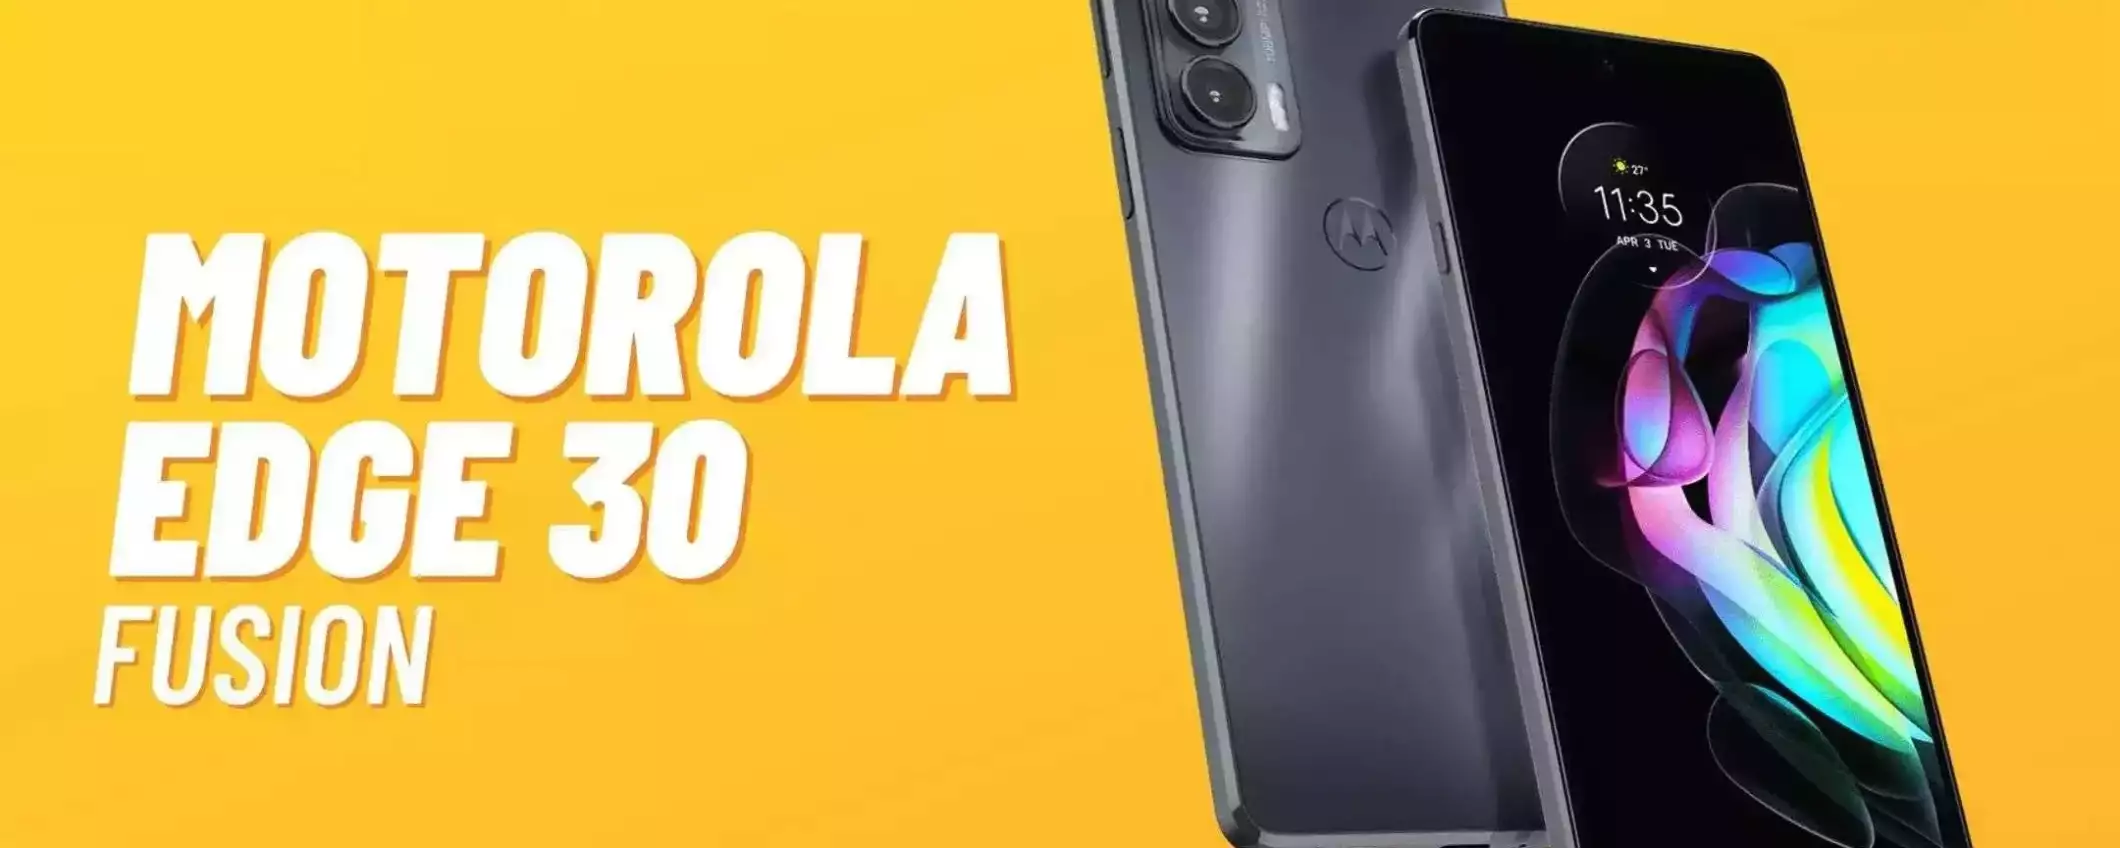 Motorola Edge 30 Fusion: potente, equilibrato, economico e lo paghi anche in comode rate